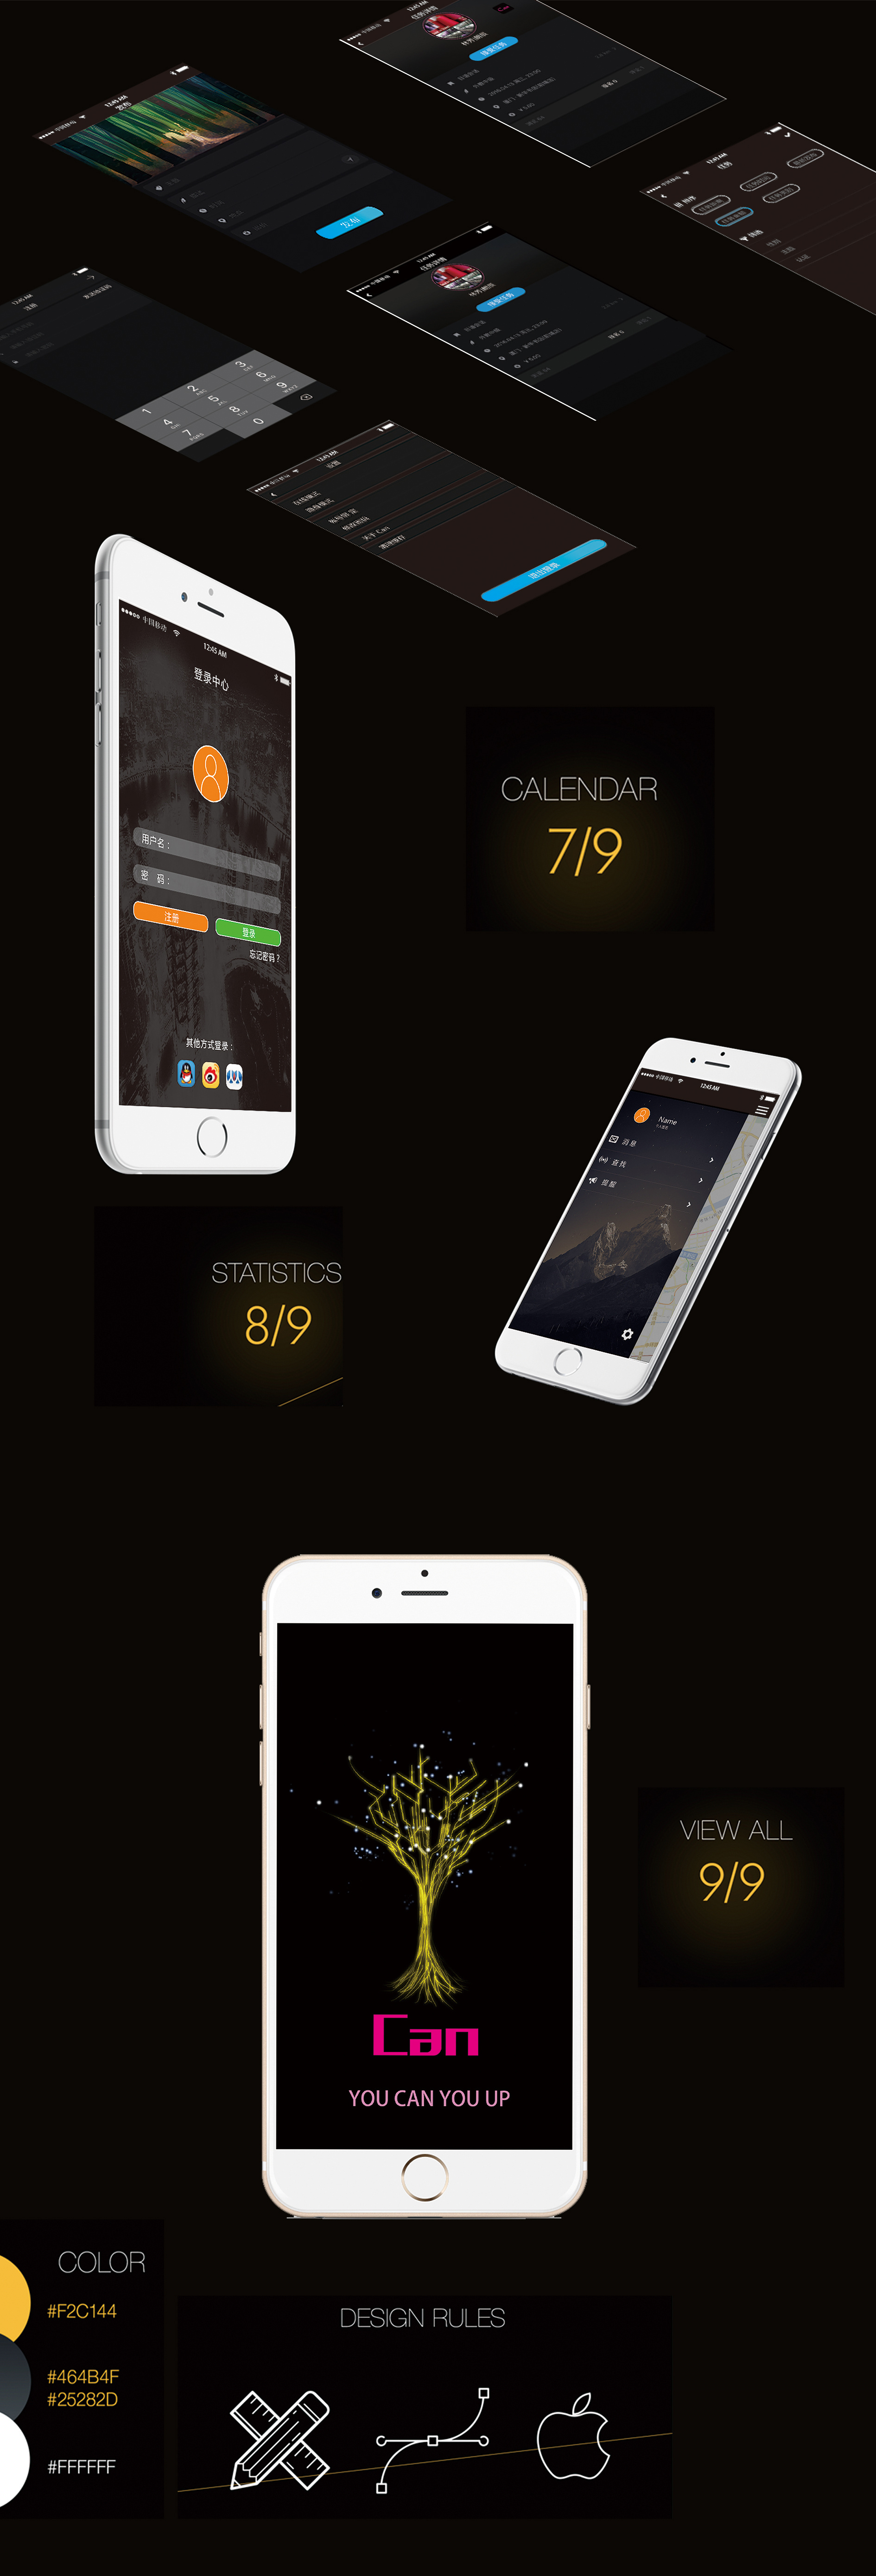 苹果手机12样机精致模版手机多角度展示模版素材iPhone 12 Pro Max Mockup V.02 - 设计口袋